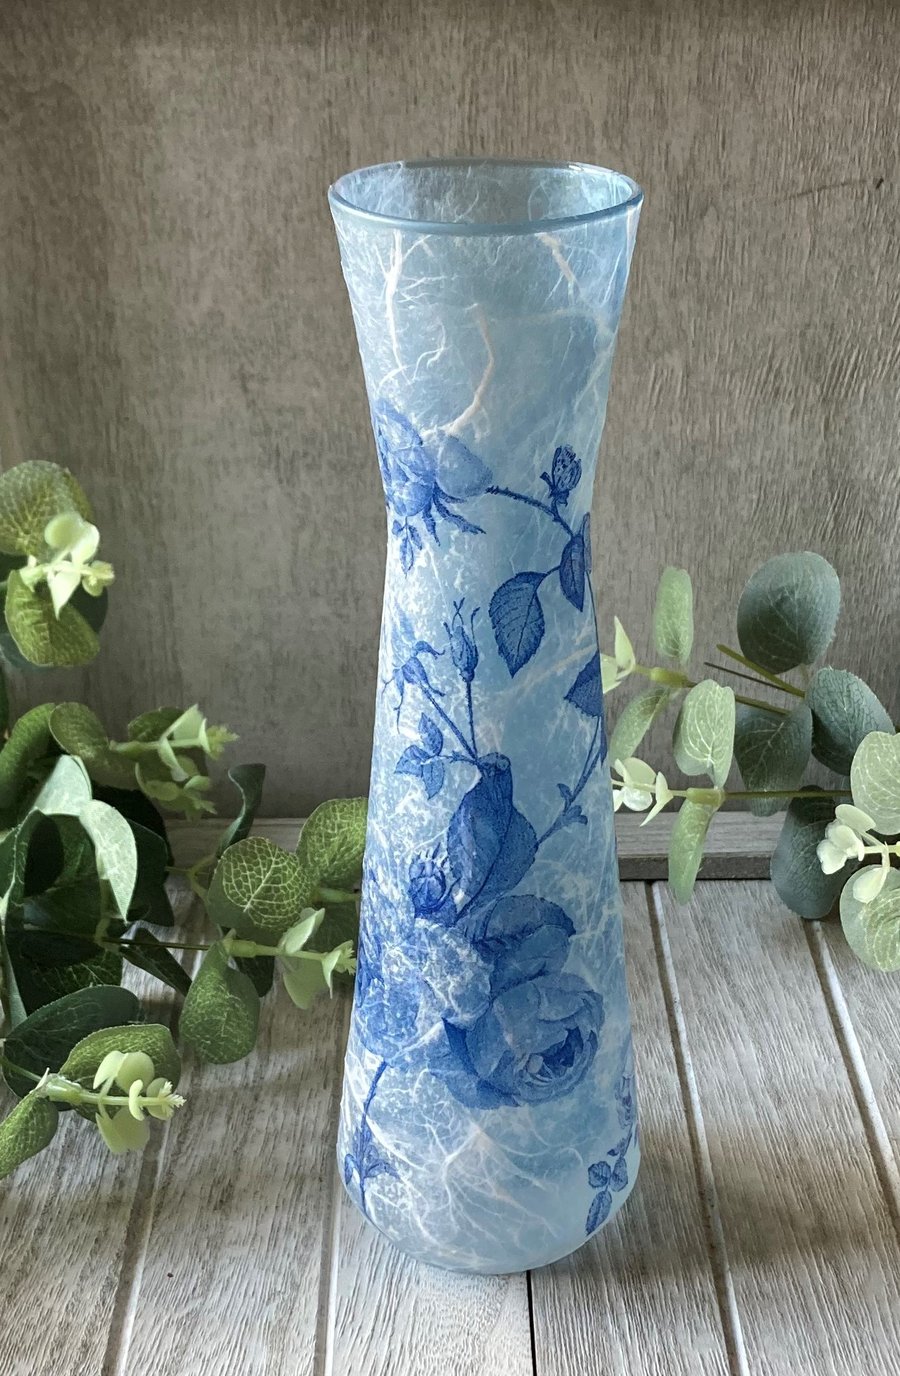 Decoupage Upcycled Blue Glass Vase Blue Roses 